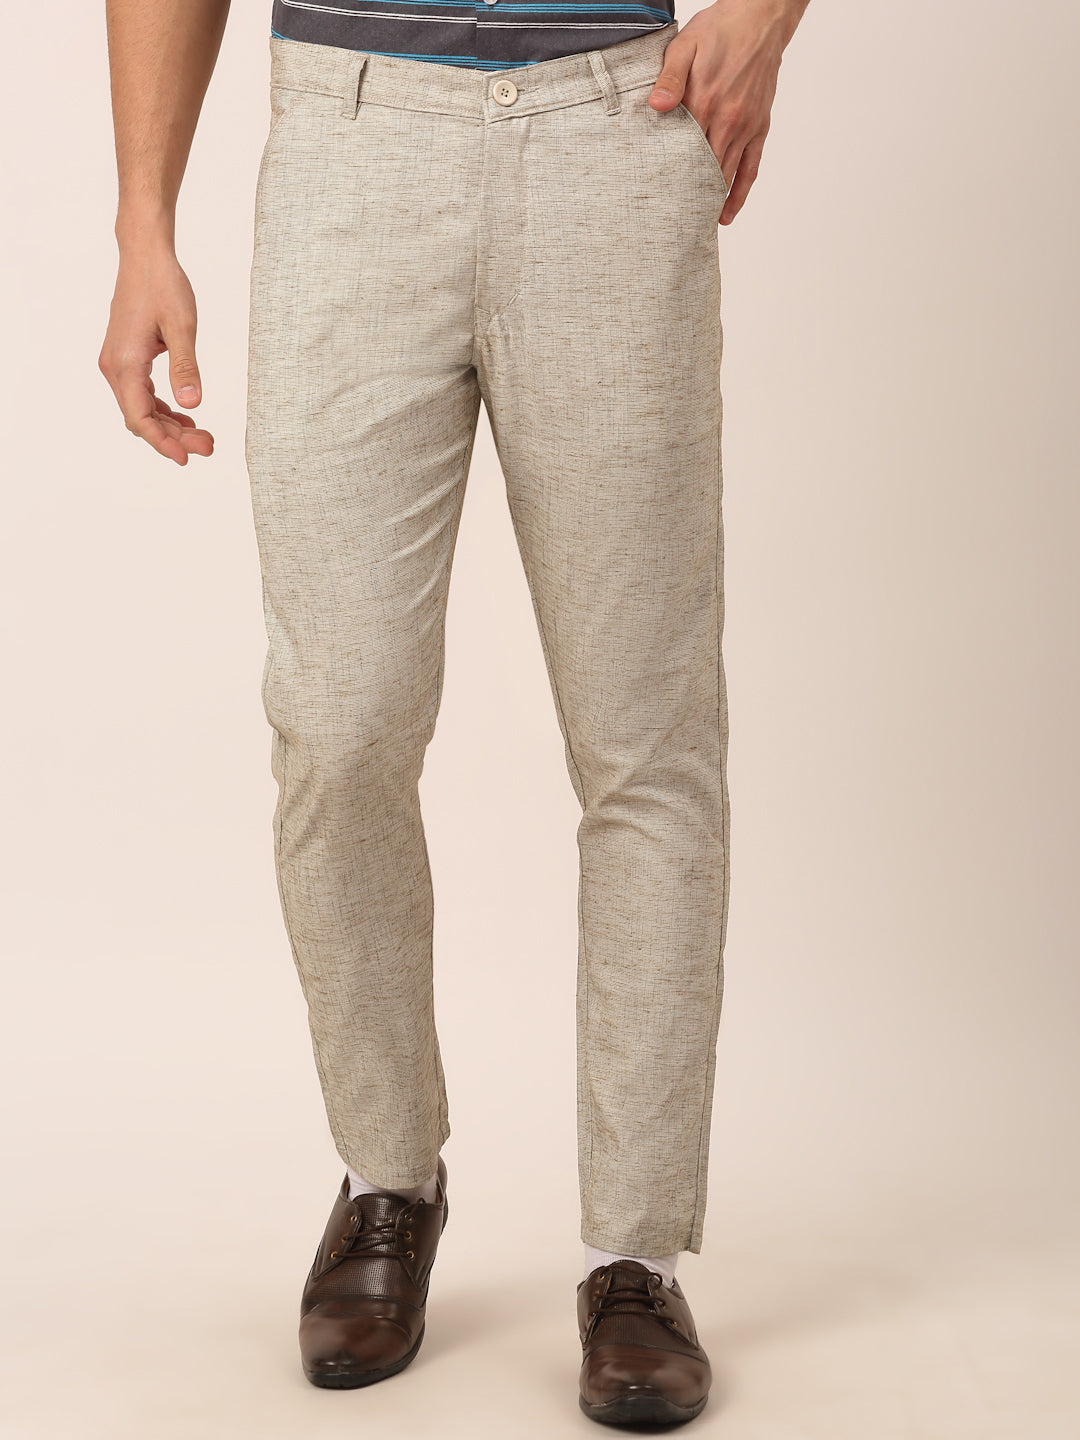 Napoli White Cotton Pants - Hangrr